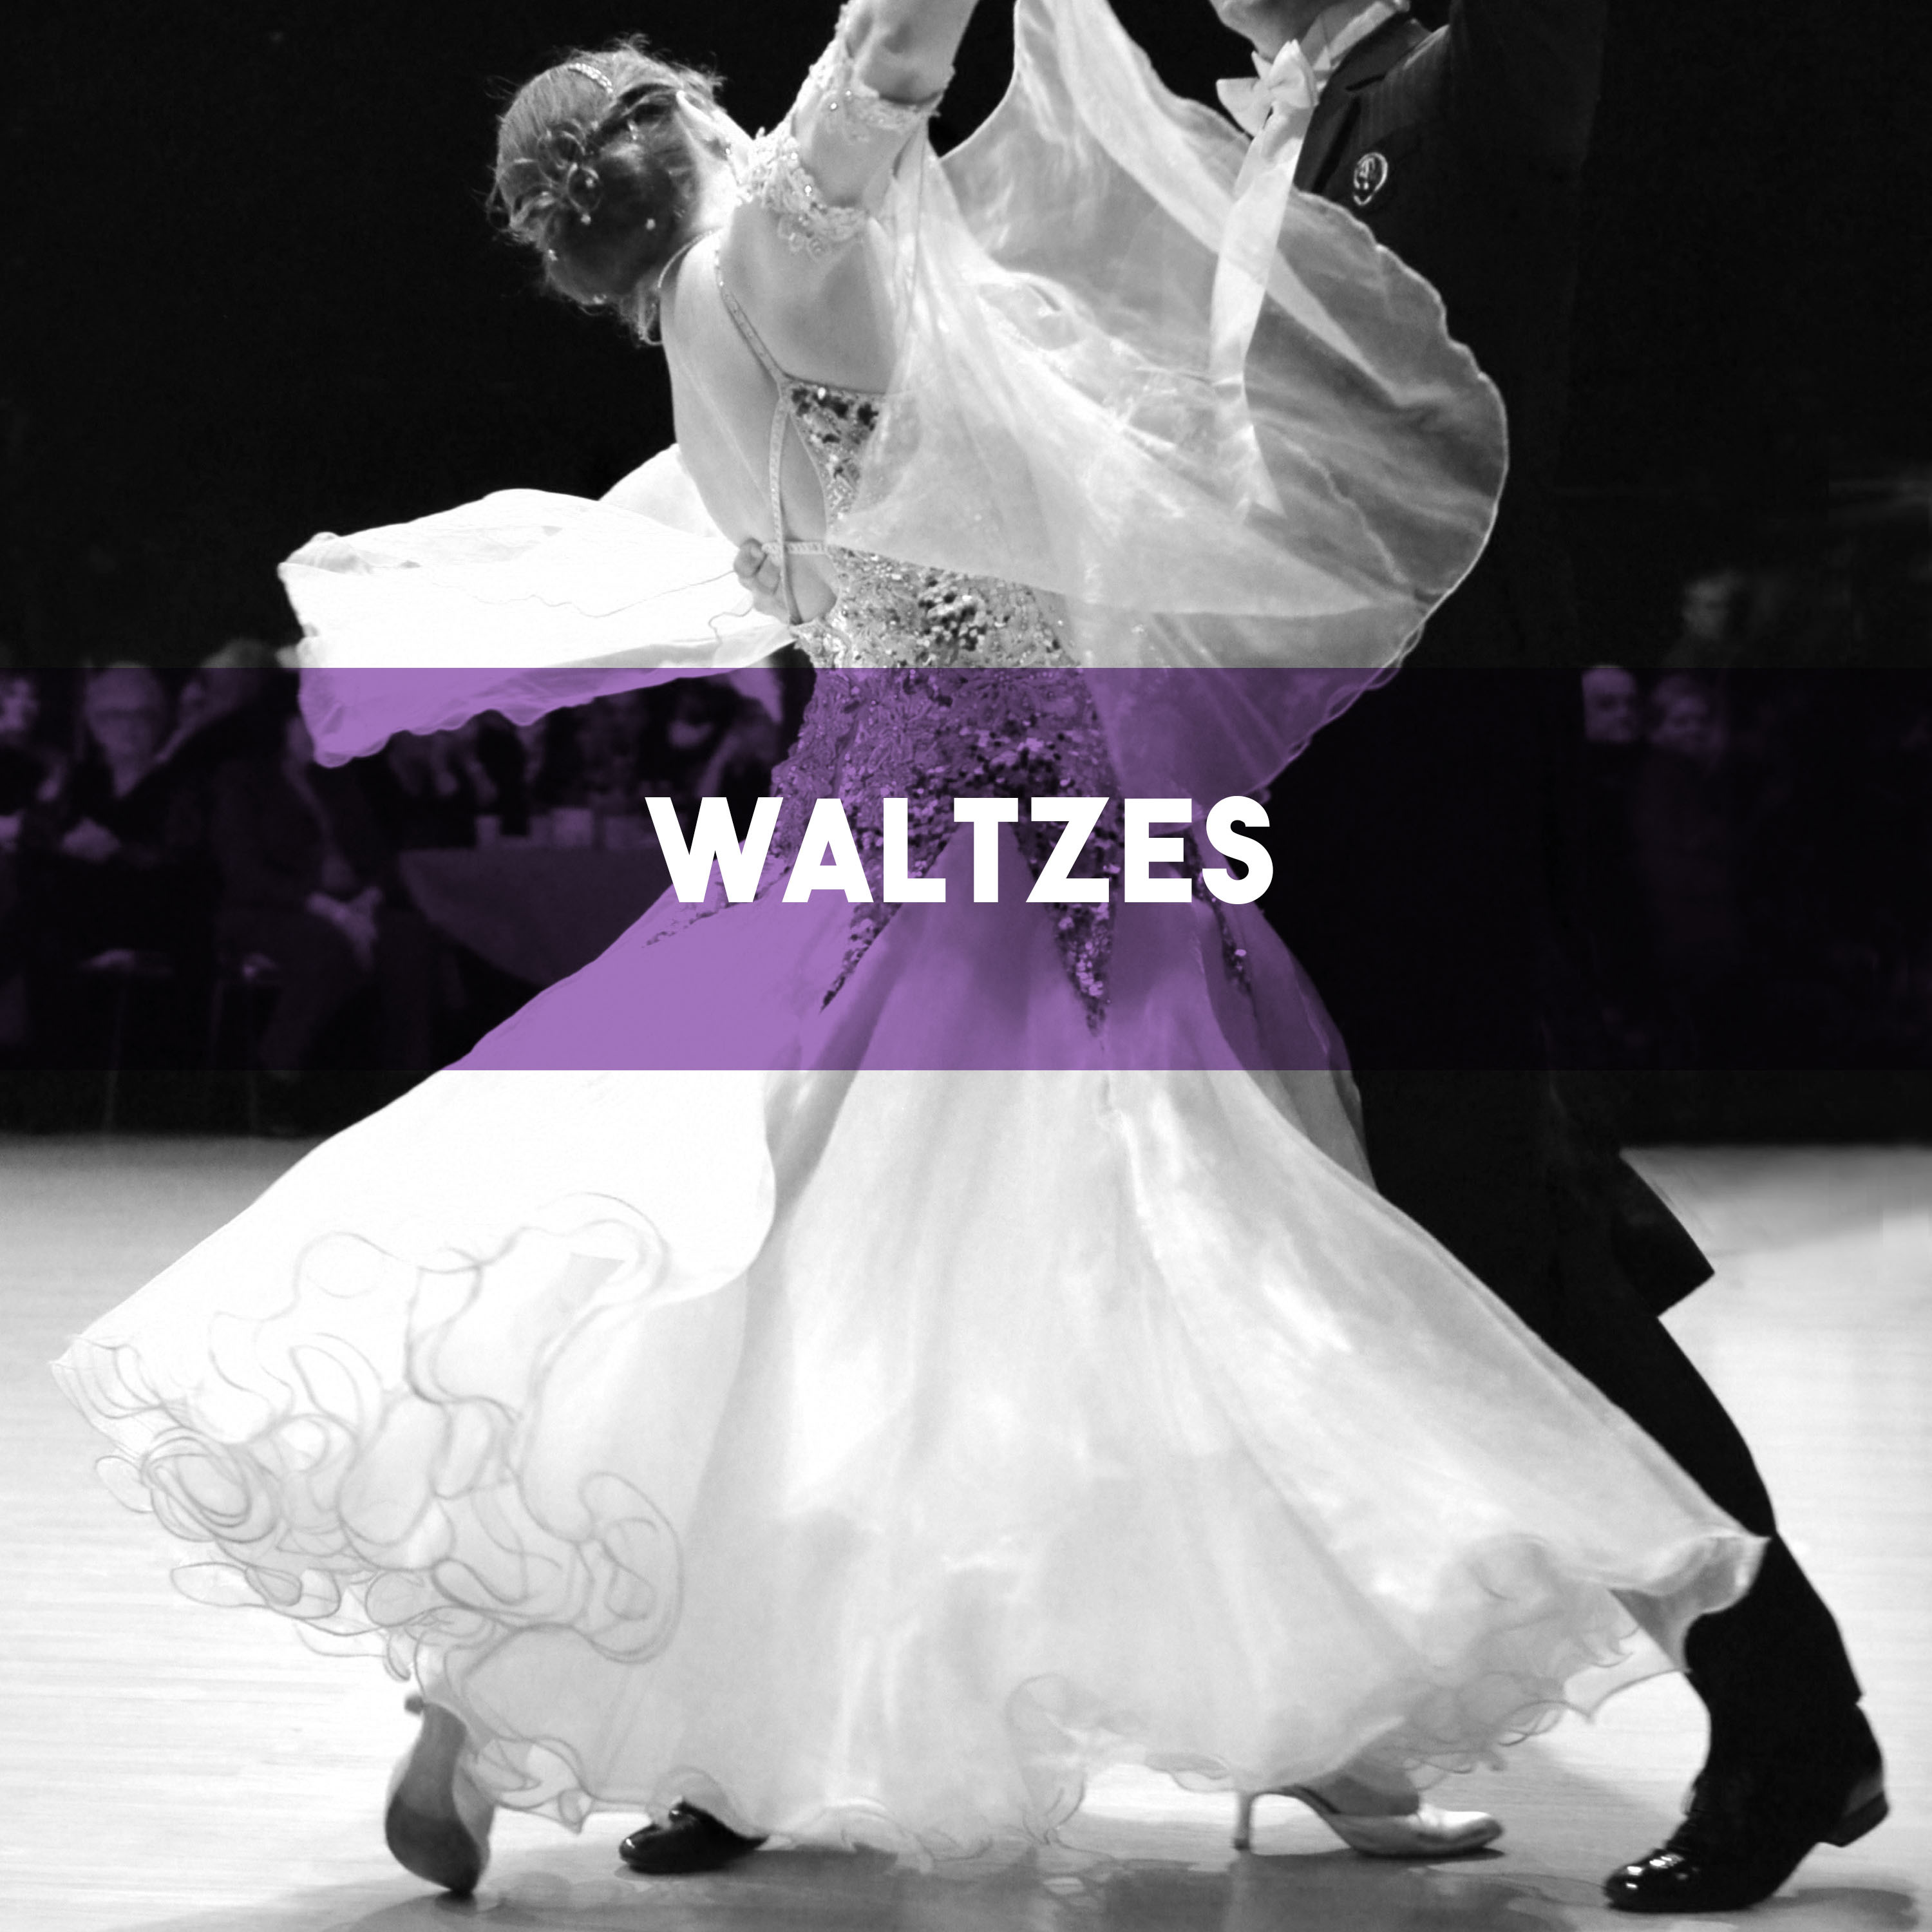 Waltzes, Op. 64 "Minutte Waltz": Waltz in D-Flat Major